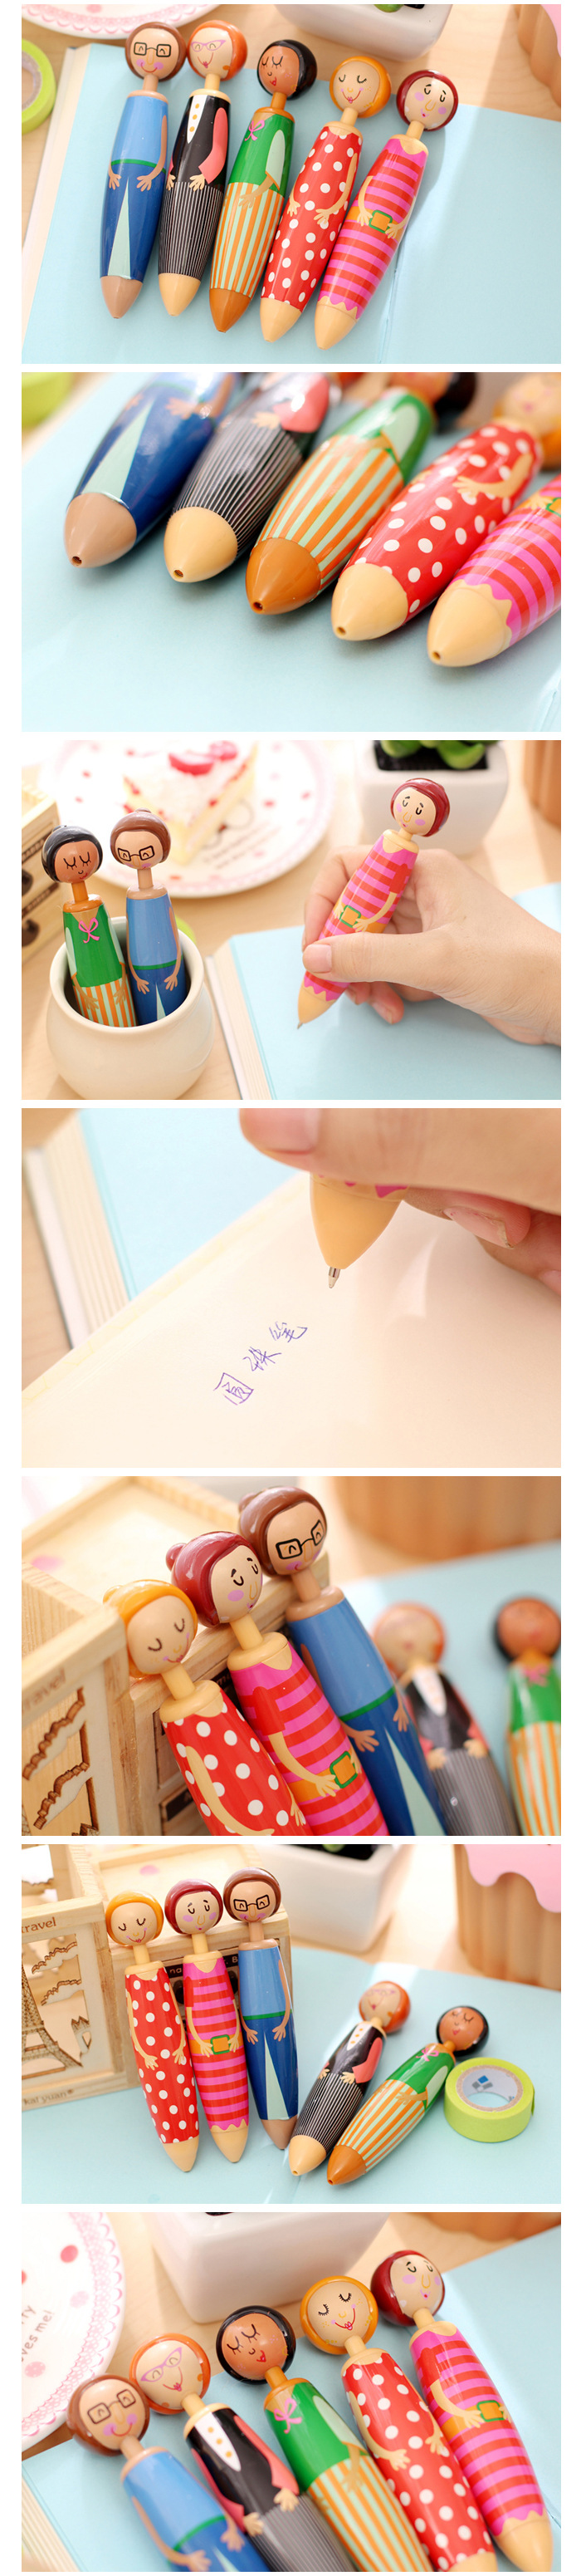 可愛人偶原子筆 創意造型胖胖筆 文具用品 造型原子筆 人物造型圓珠筆1